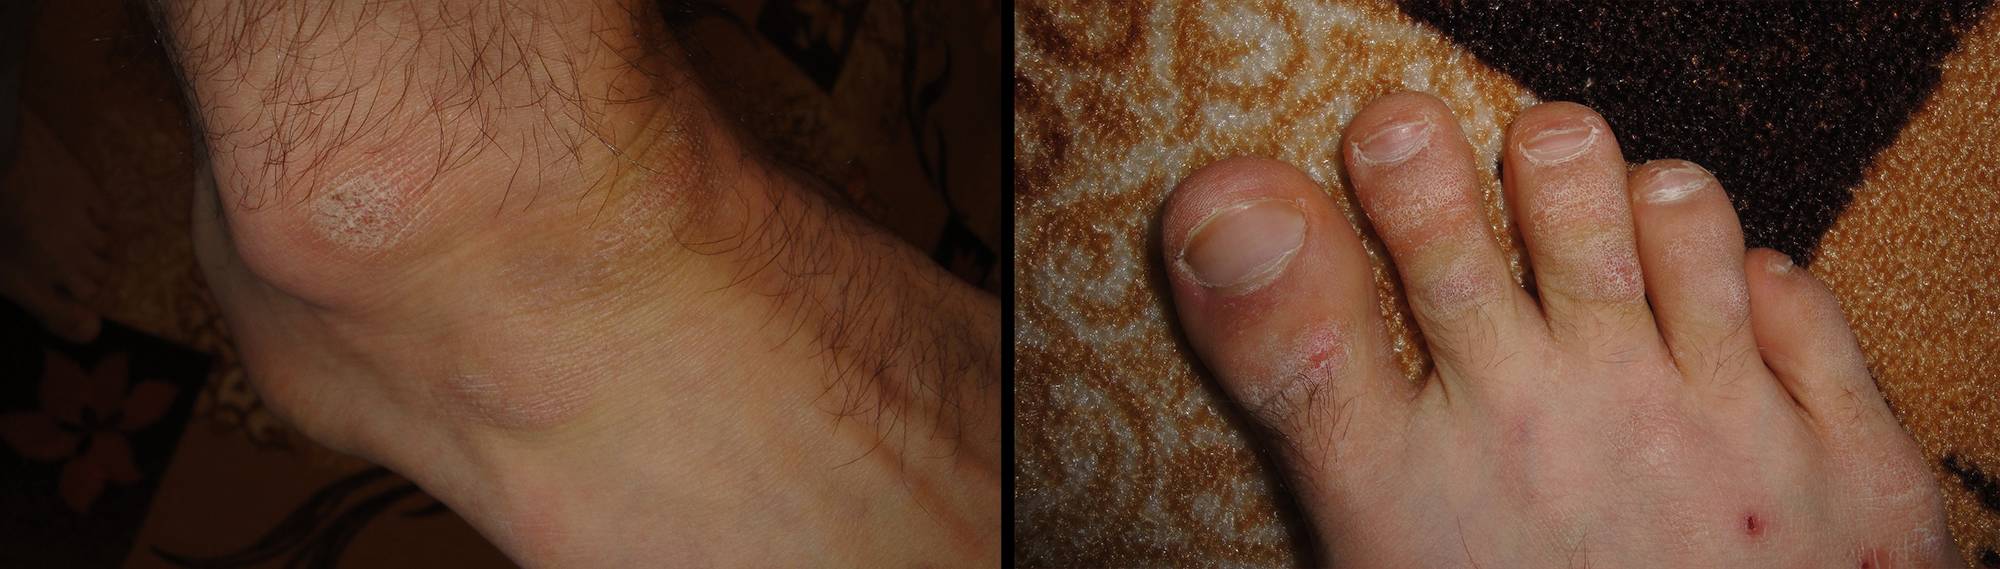 Шелушится кожа на большом пальце ноги, причины и лечение